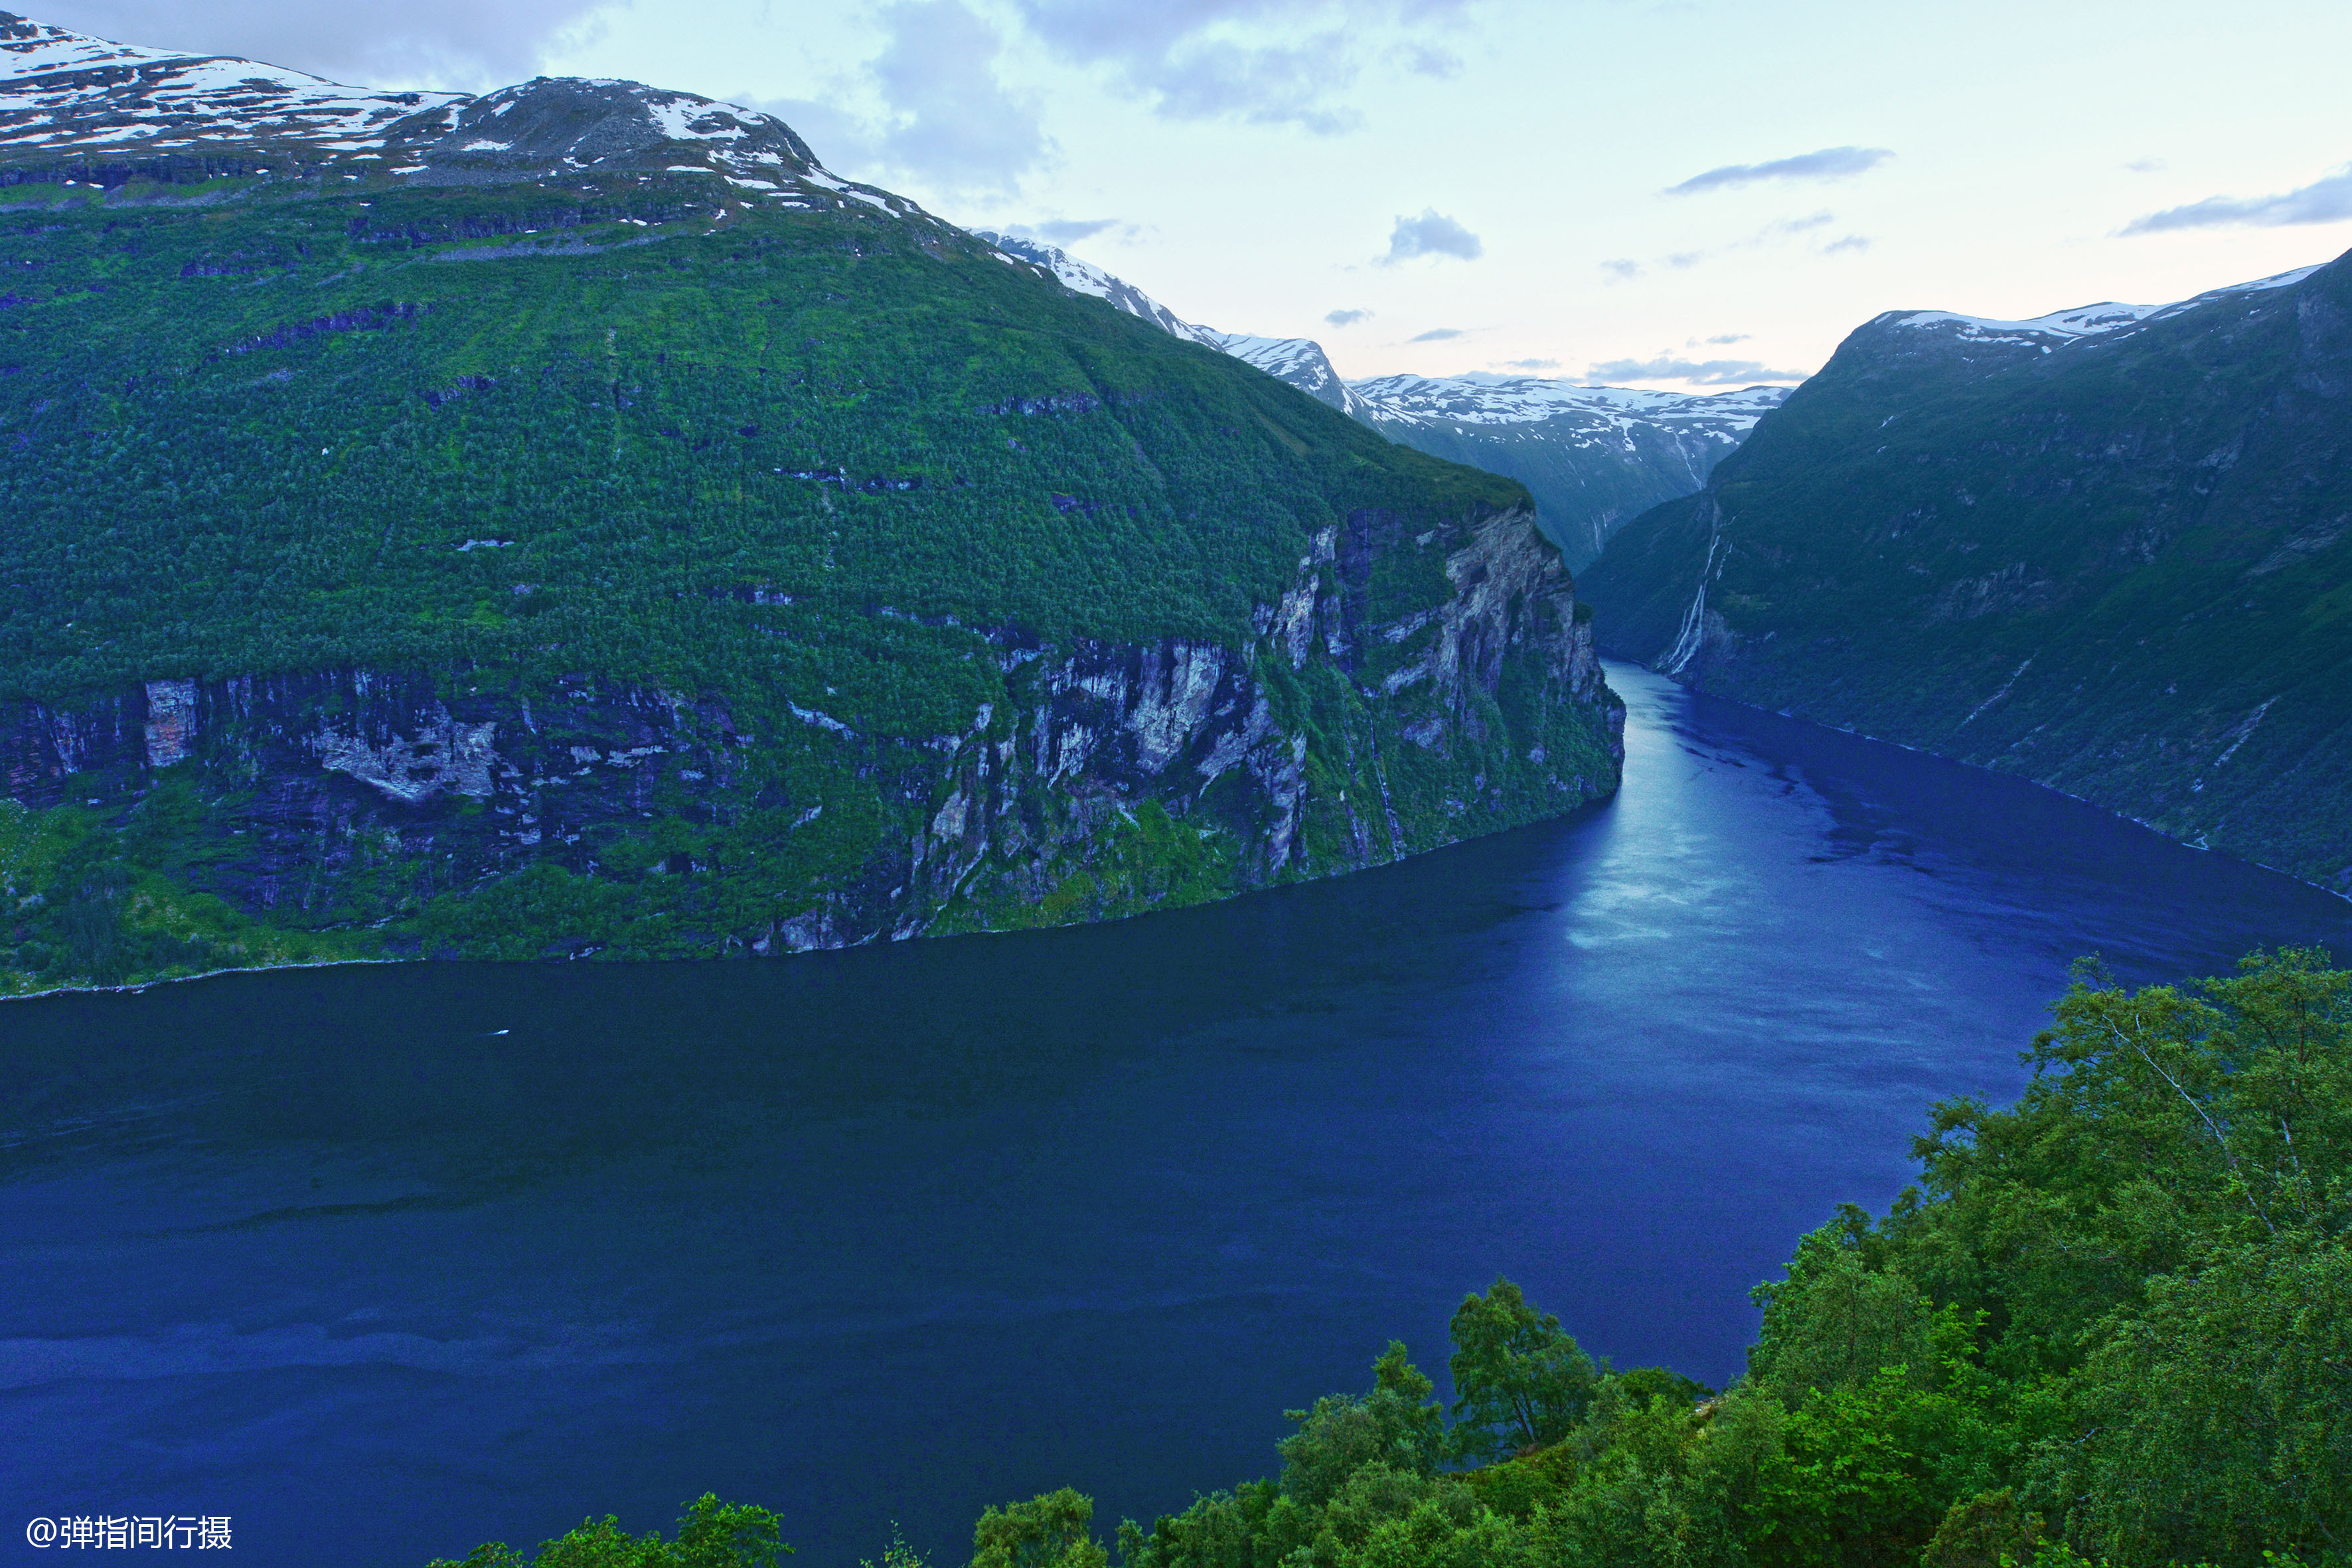 原创挪威最壮美的峡湾,随手拍就是风光大片,号称峡湾之王